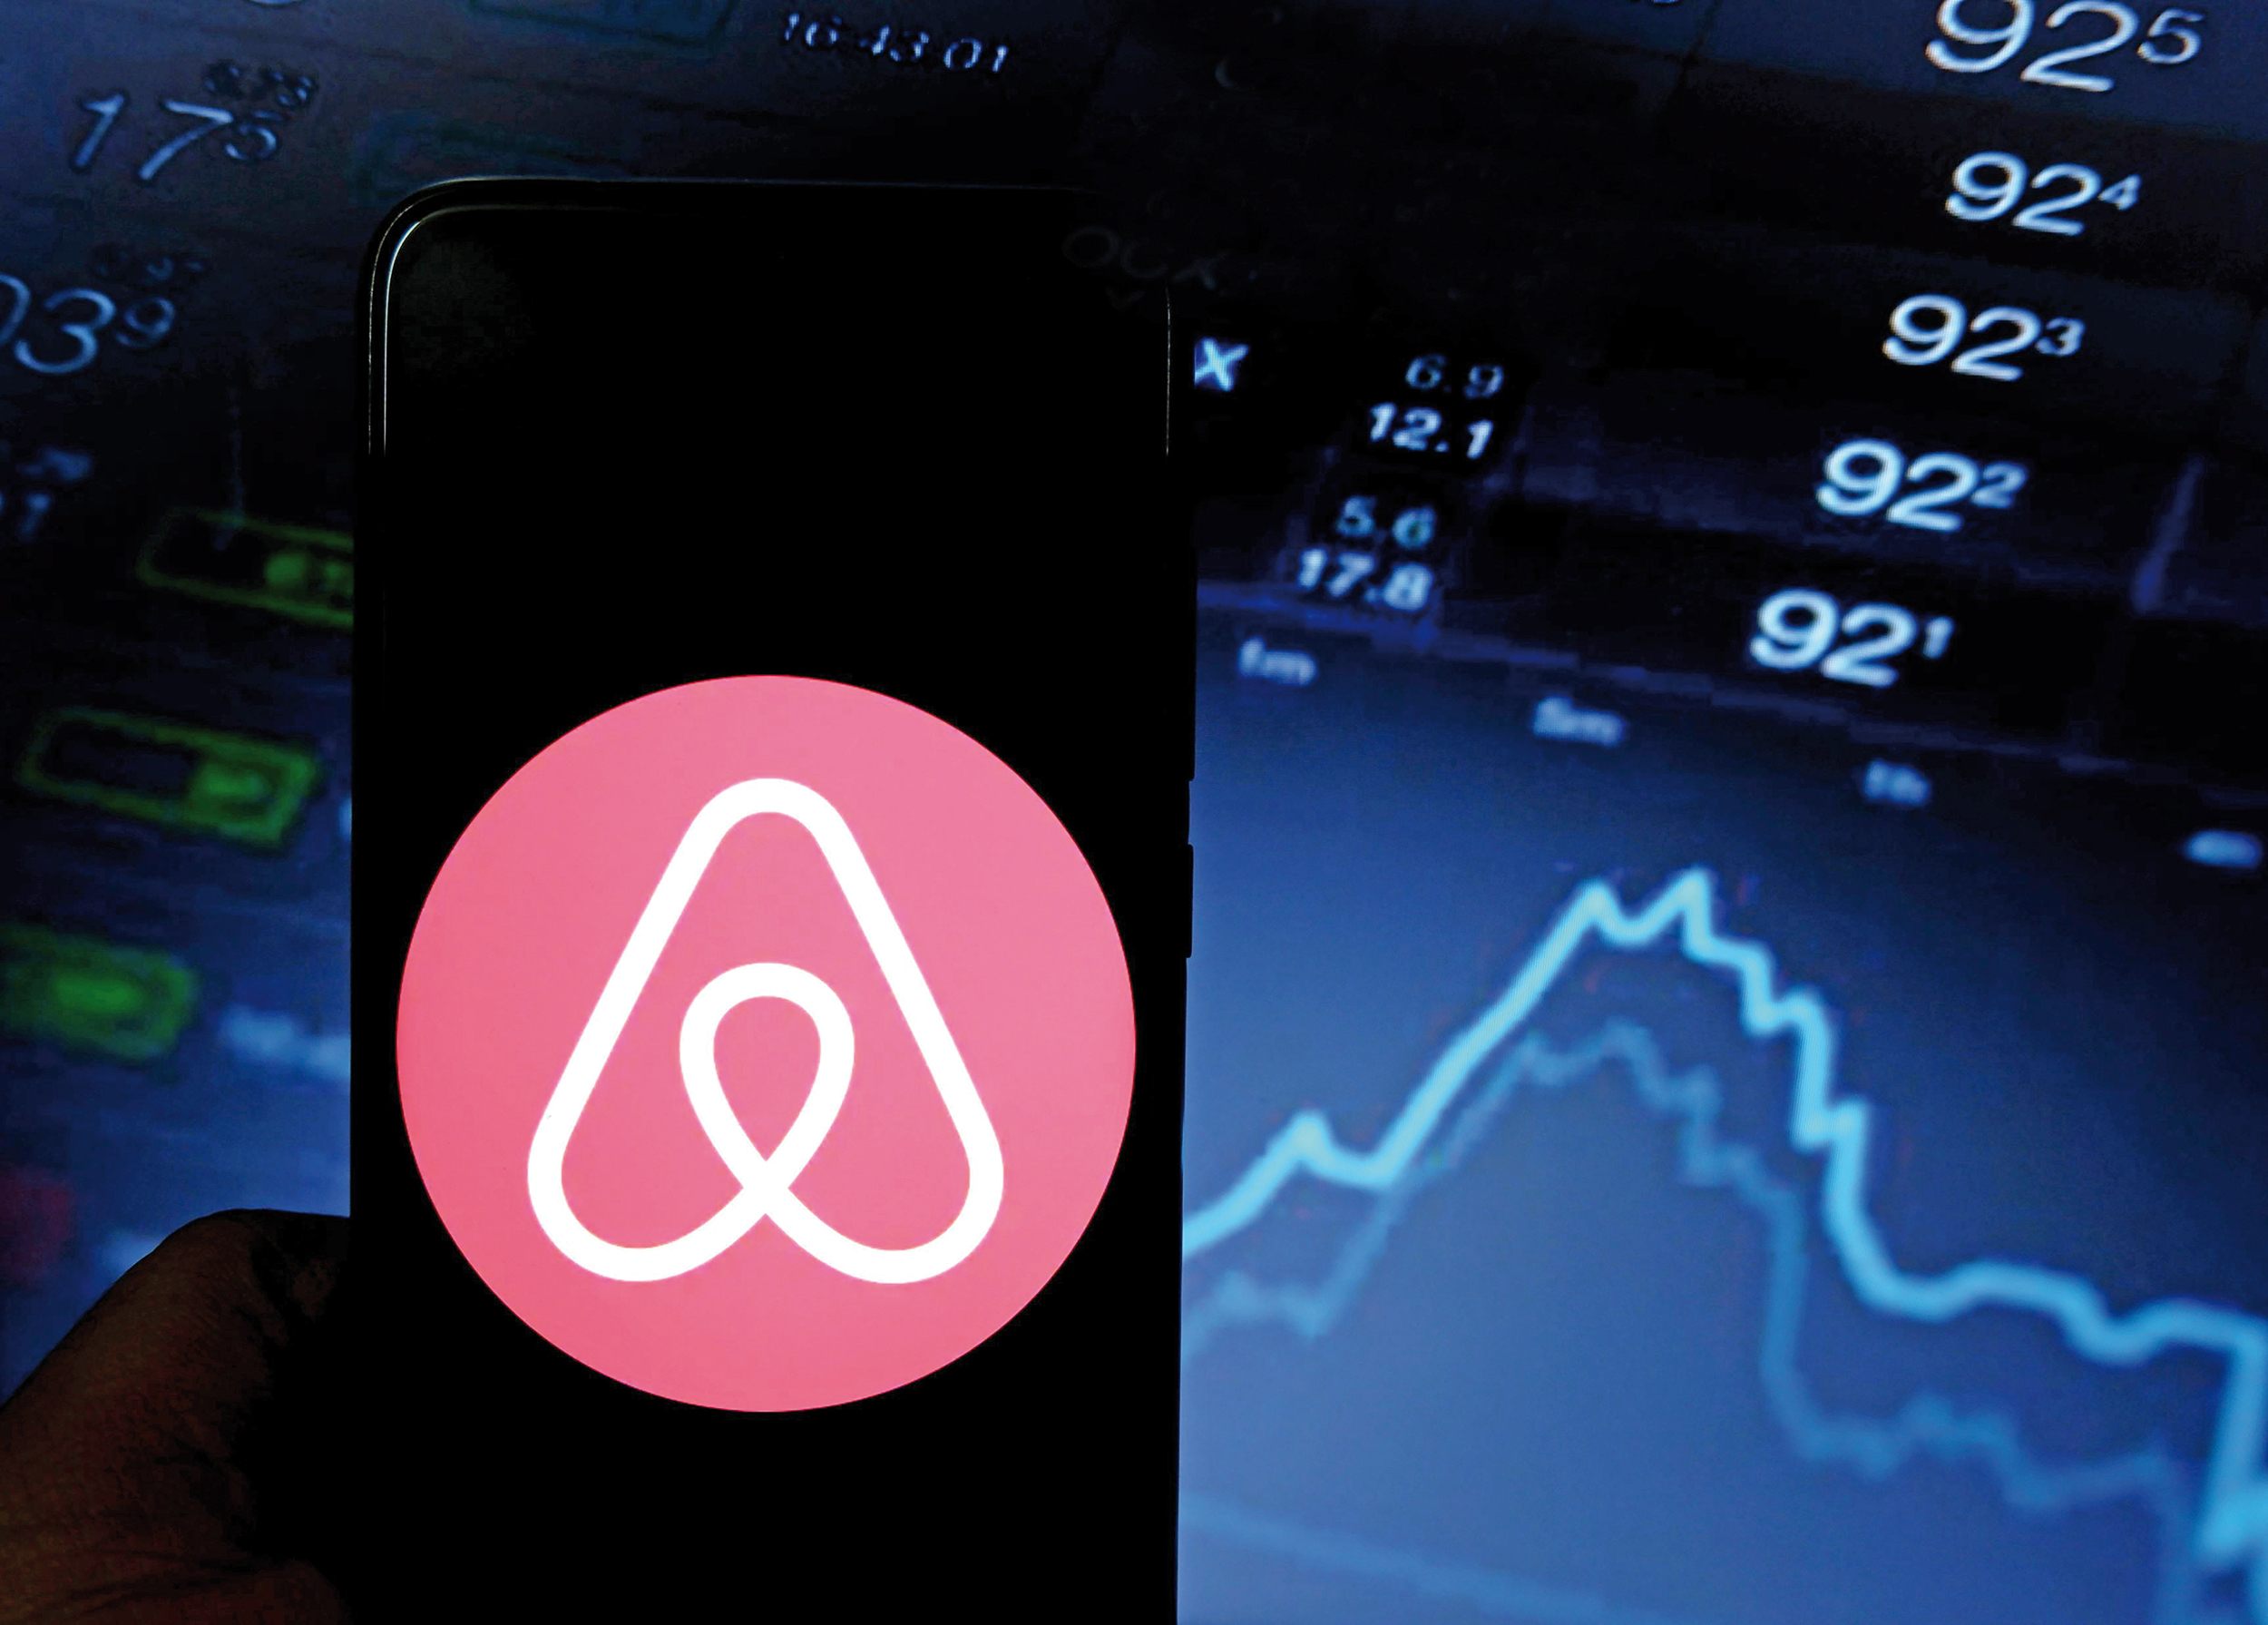 Investitorii aruncă cu bani: celebra platformă Airbnb a fost cotată la 101,6 mld. dolari, cel mai mare IPO din 2020 din SUA